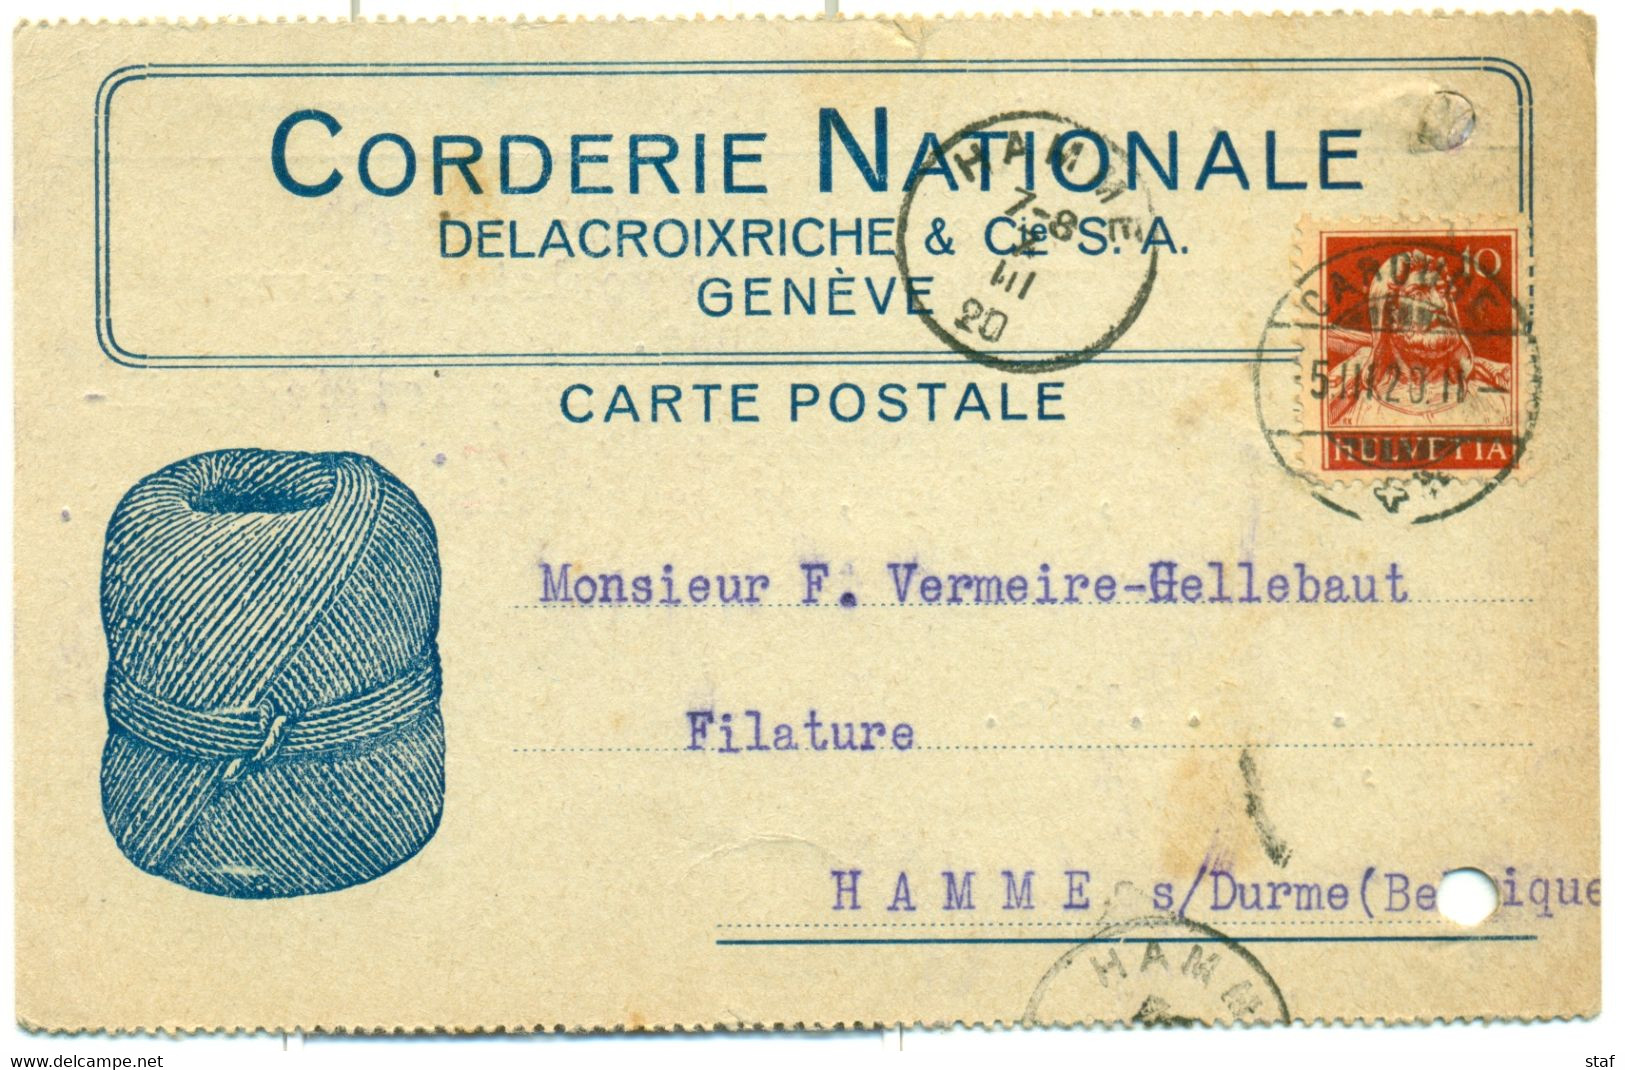 Carte Postale De La Corderie Nationale  Delacroixriche & Cie à Genève - Cachet De La Poste Caroube - 1920 !! - Zwitserland